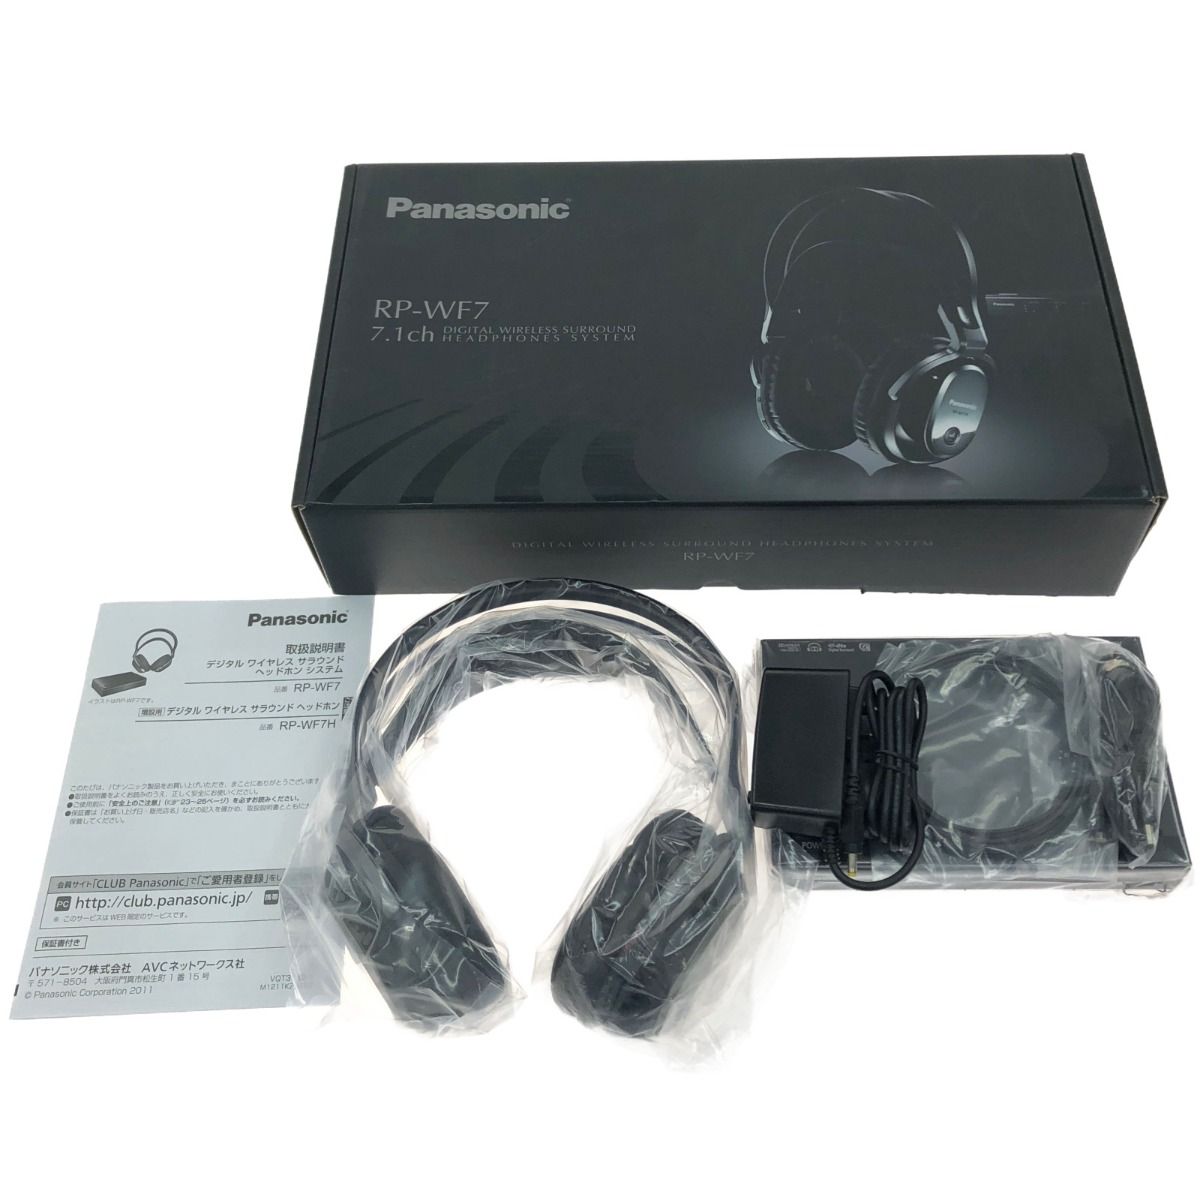 正規逆輸入品 無線7.1聲道數位環繞立體聲耳筒- Panasonic RP-WF7T RP 